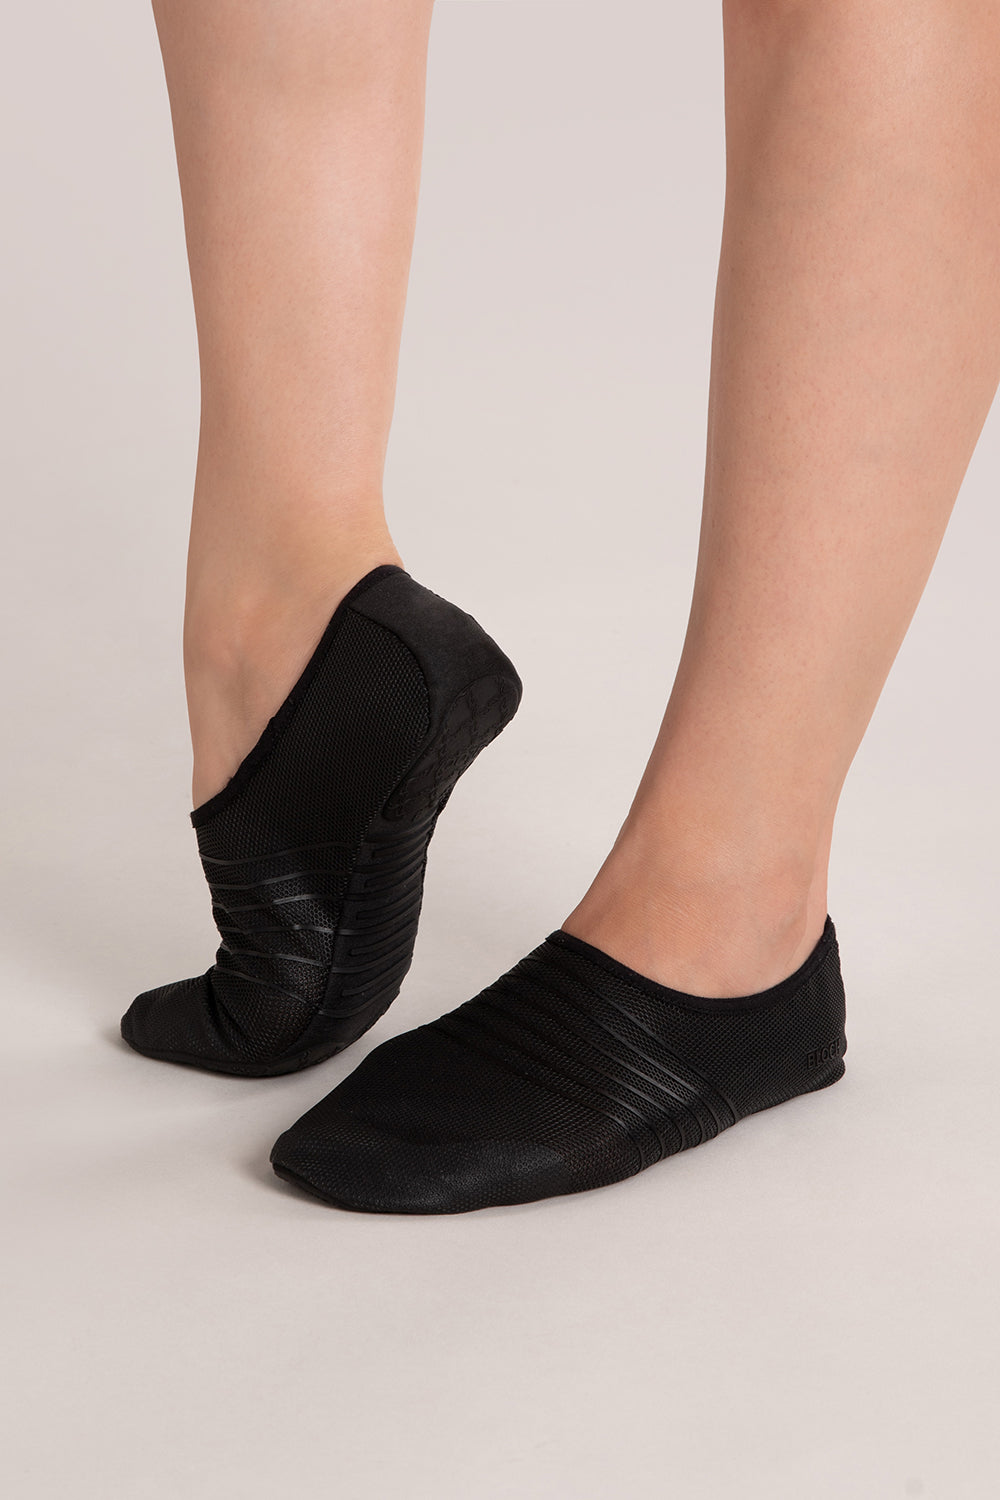 AB005 Anti-skid Elastic Yoga Shoes Cross Strap Ladies Soft Sole Pilates  Dance Shoes - Black / L Wholesale